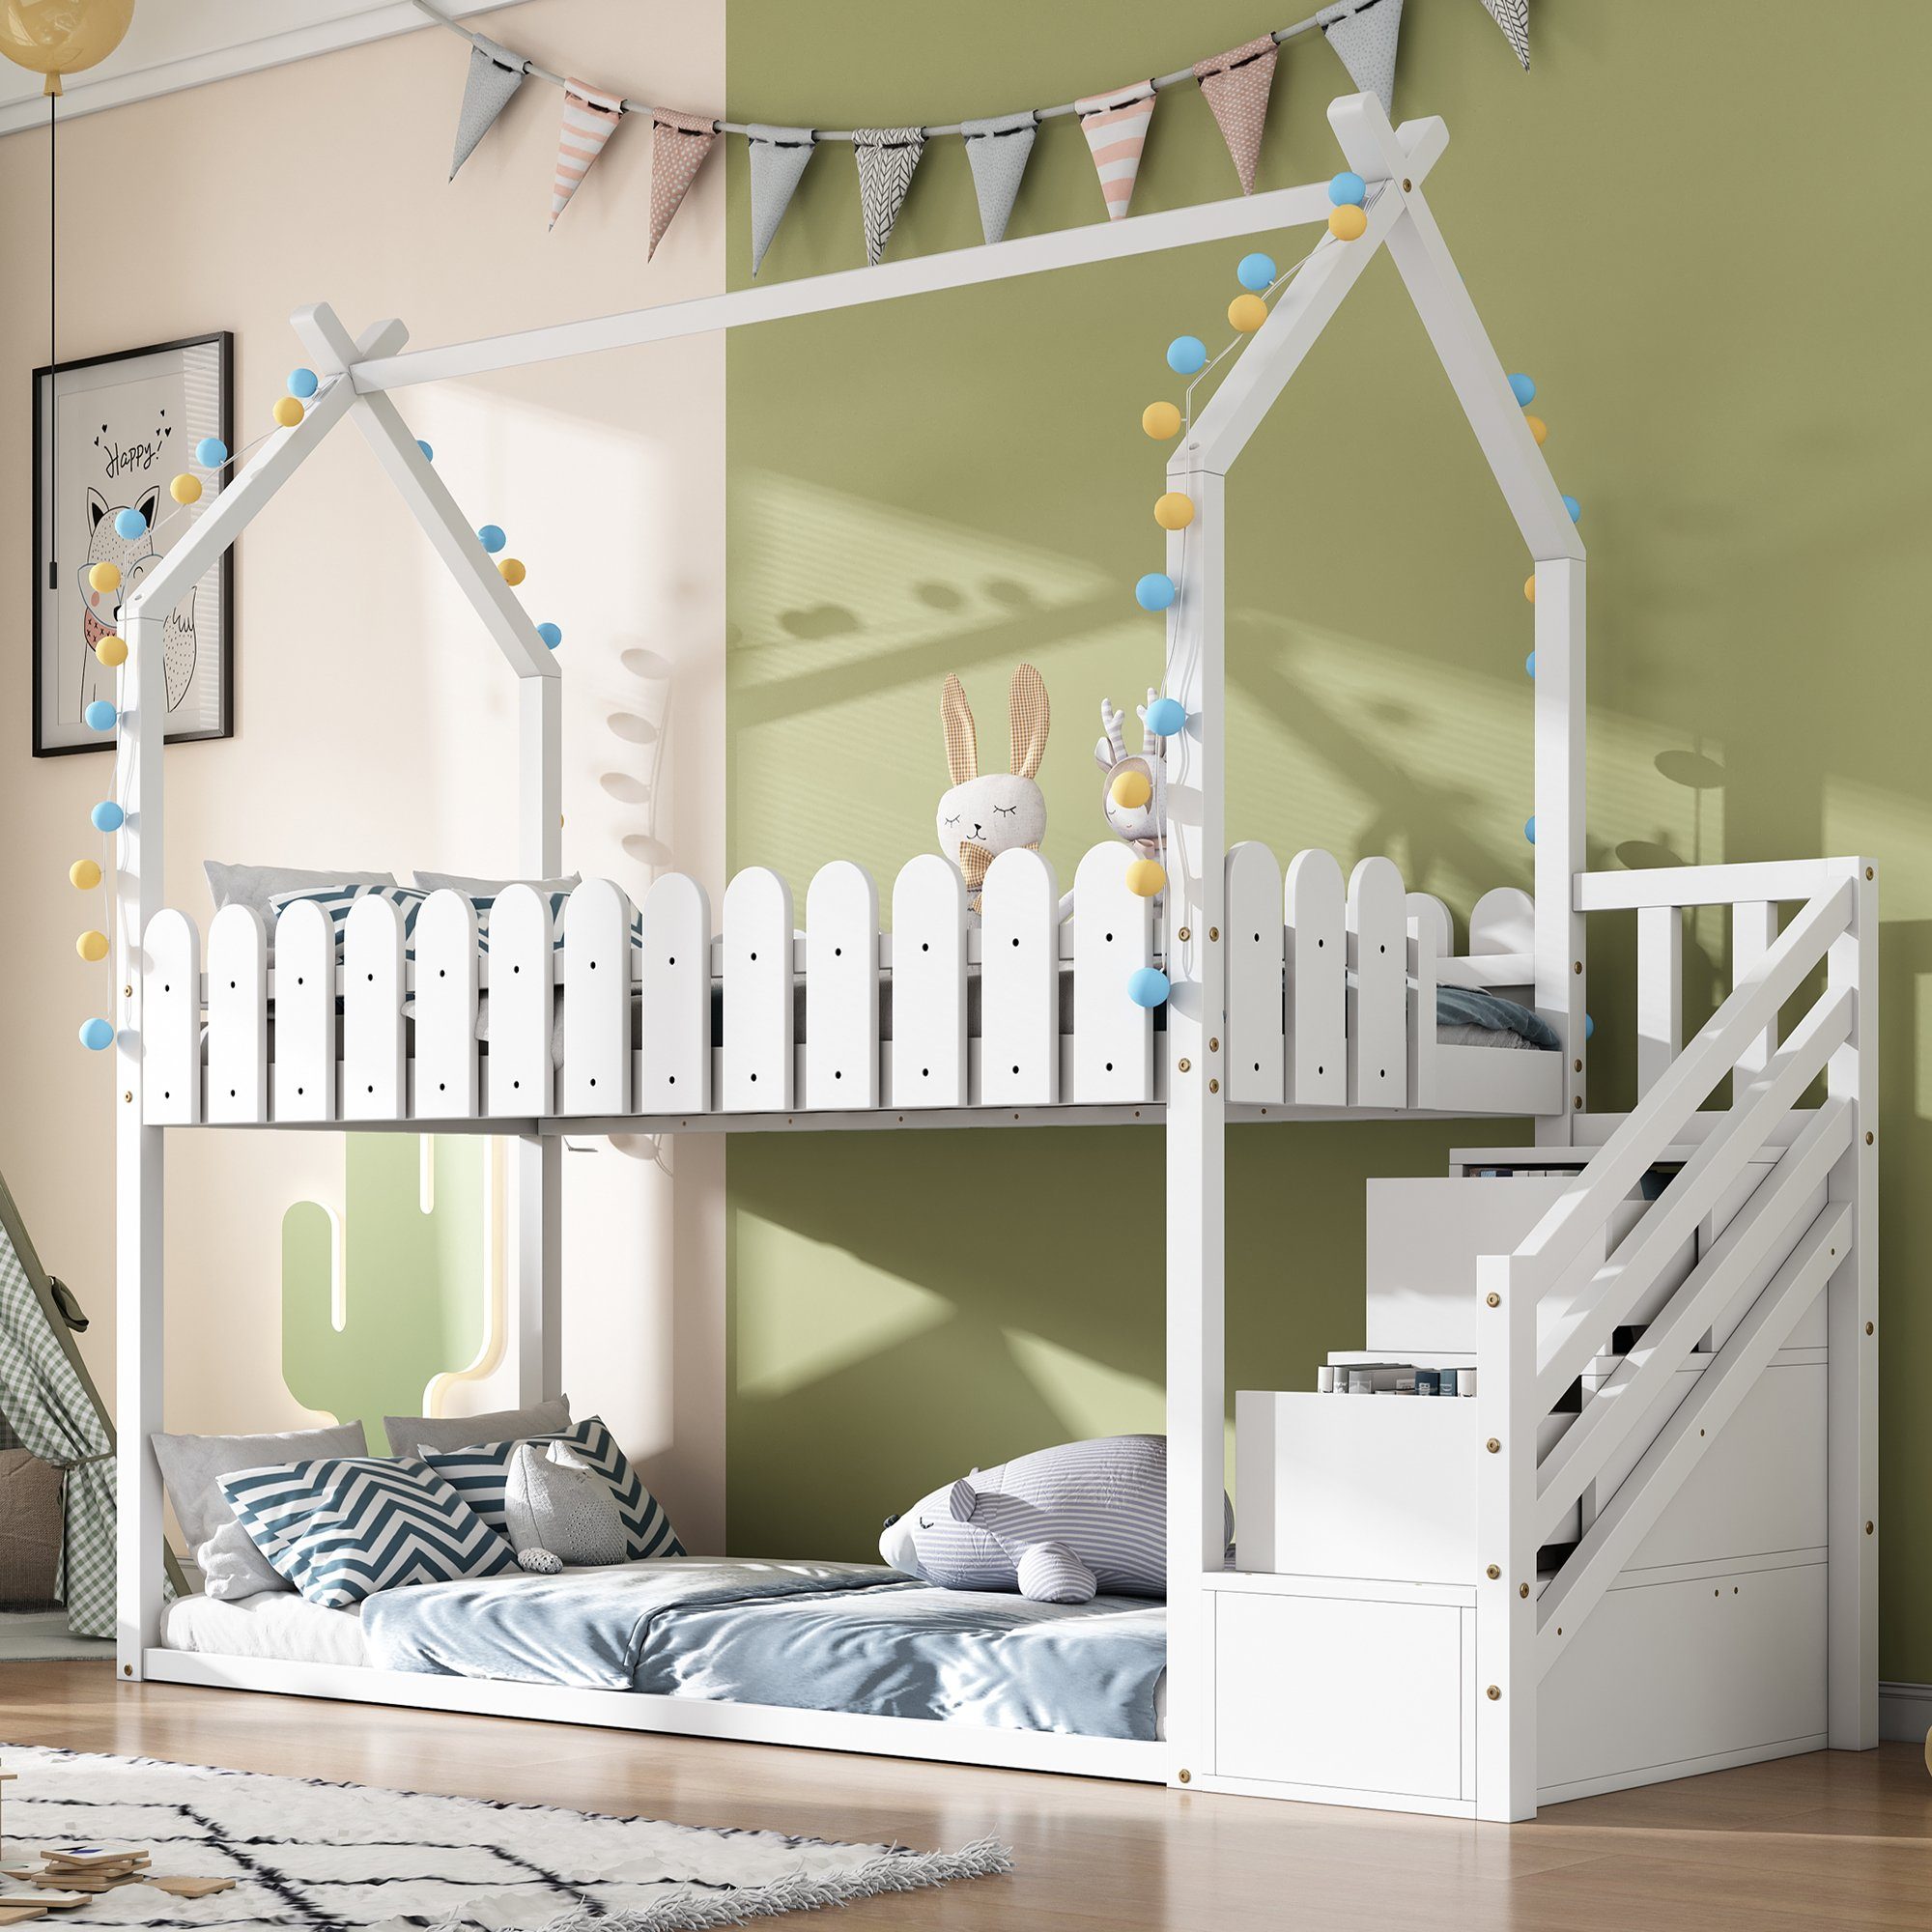 SOFTWEARY Etagenbett mit 2 Schlafgelegenheiten, Lattenrost und Treppe (90x200 cm), Kiefer, Hausbett inkl. Rausfallschutz, Kinderbett weiß